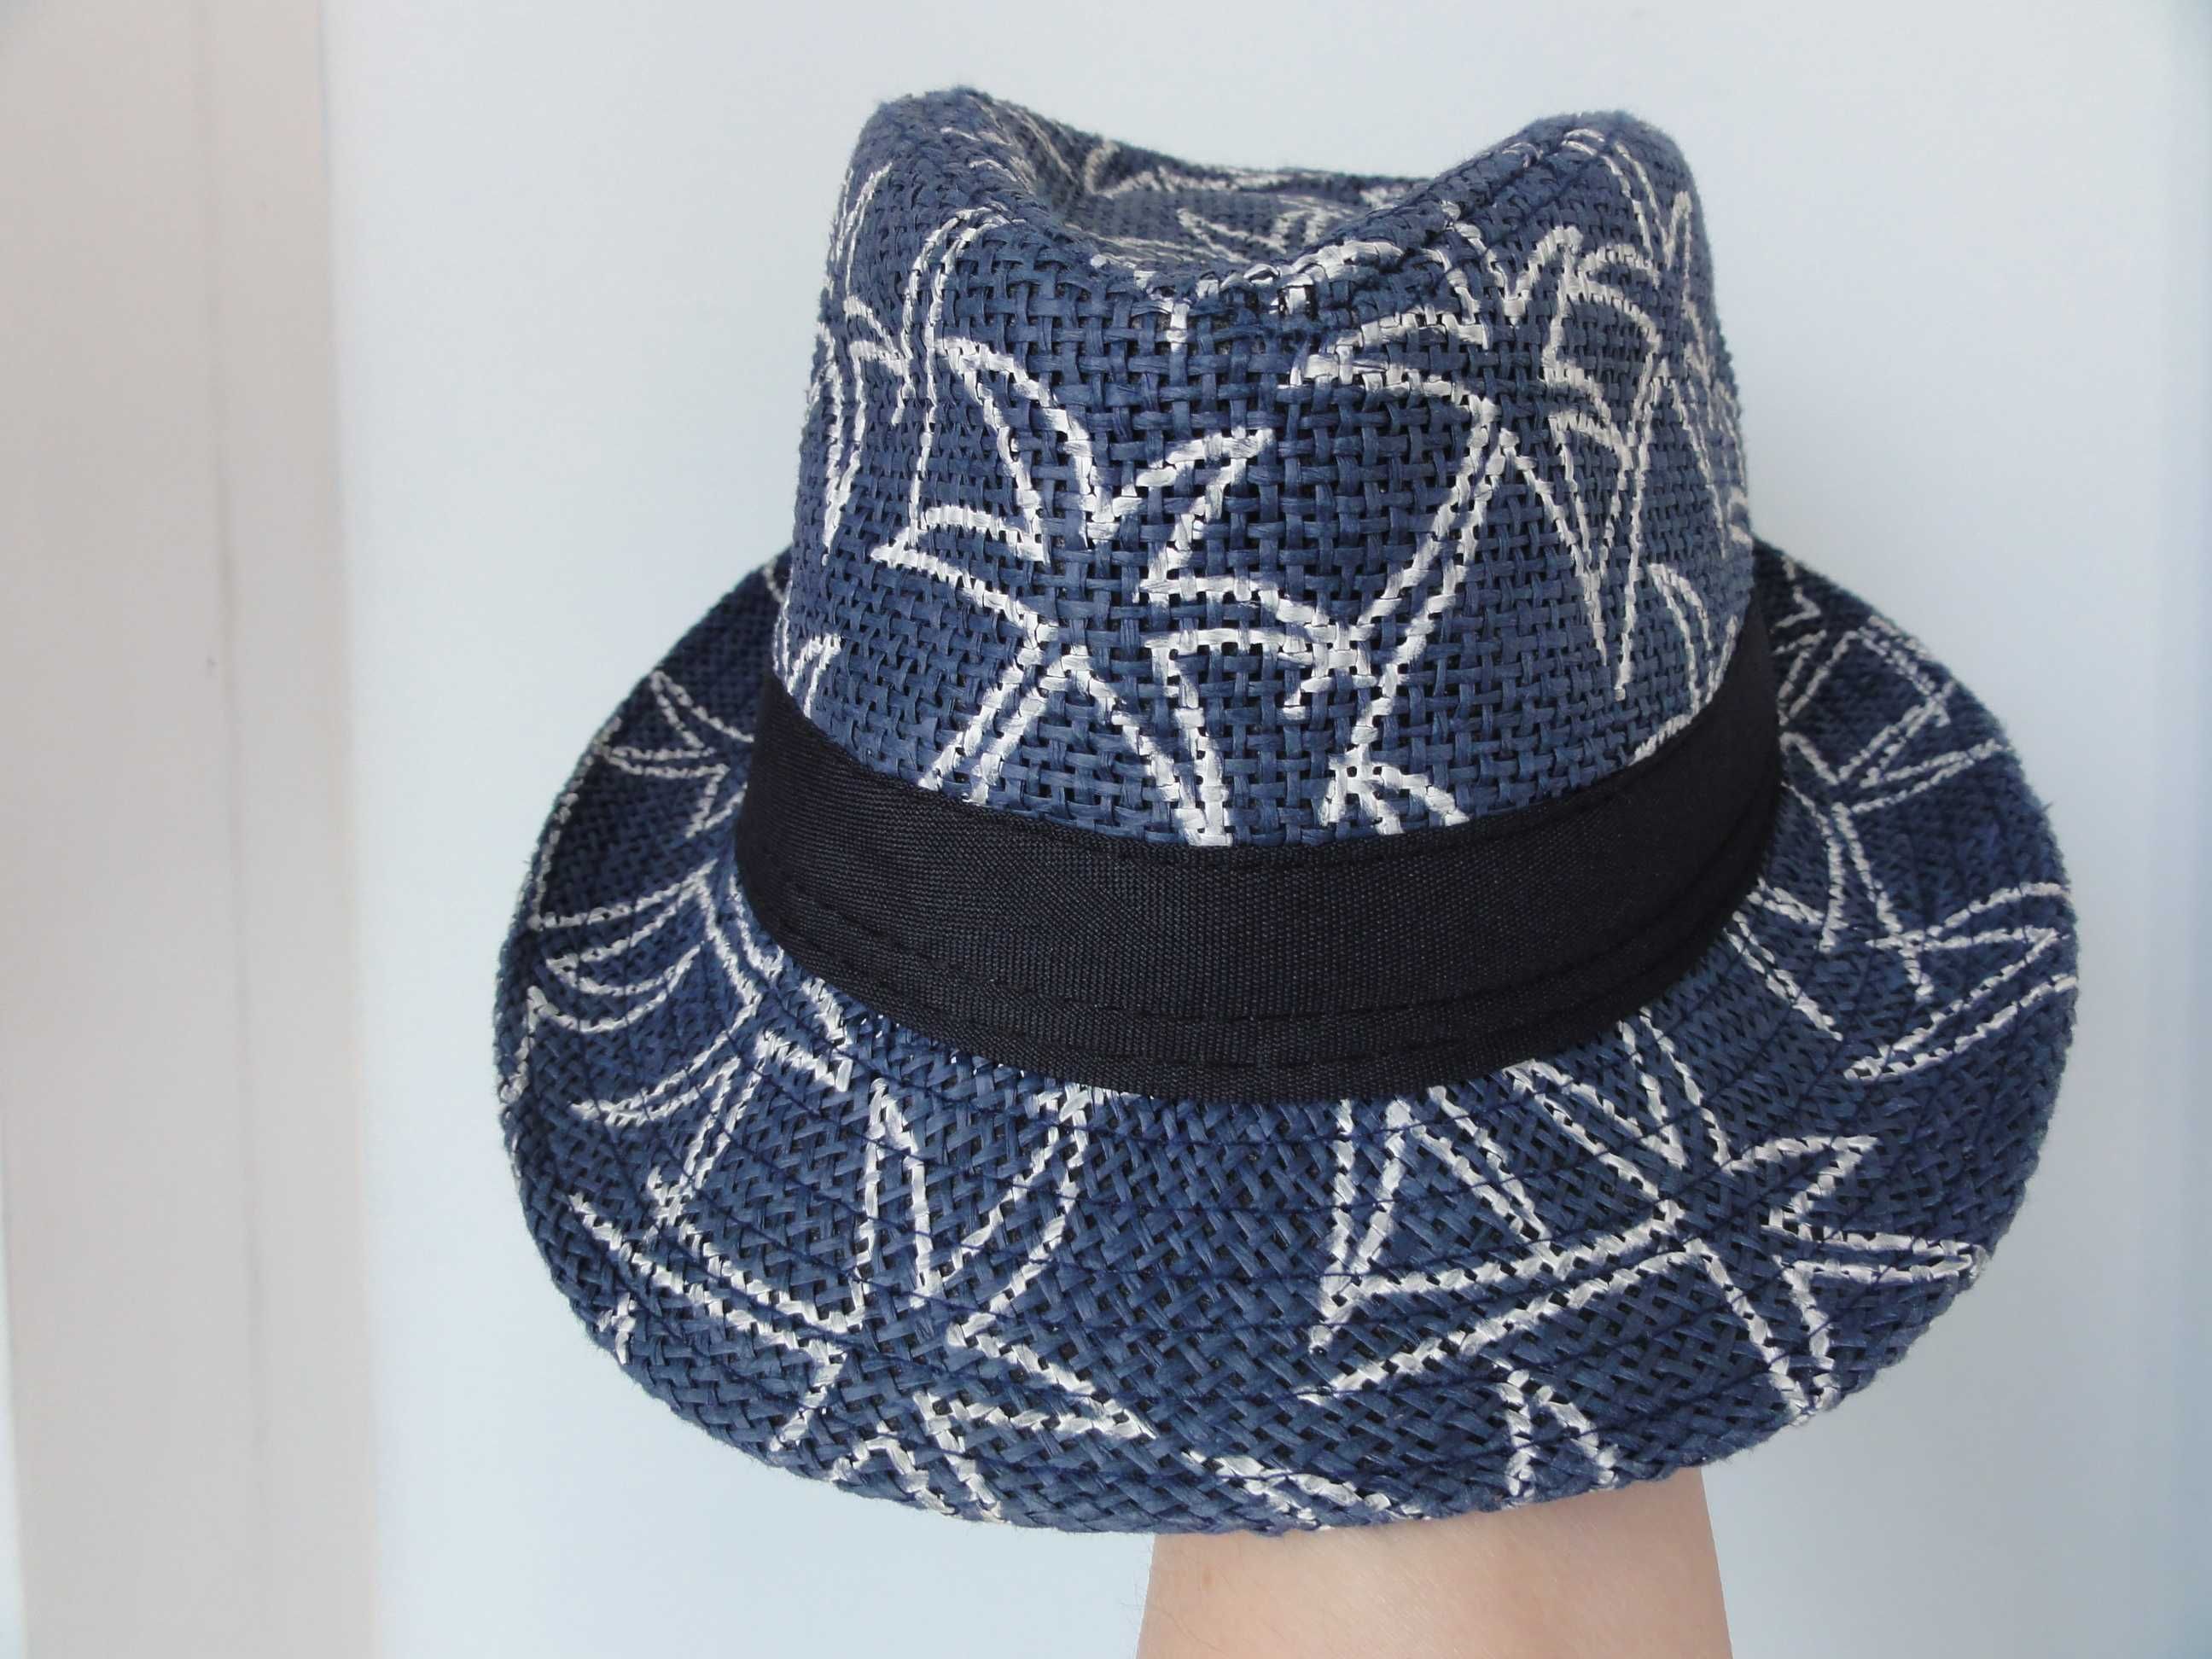 Шляпы стильные: подростковая H&M, малышу ZEEMAN(2-4года).Куплены в EU!